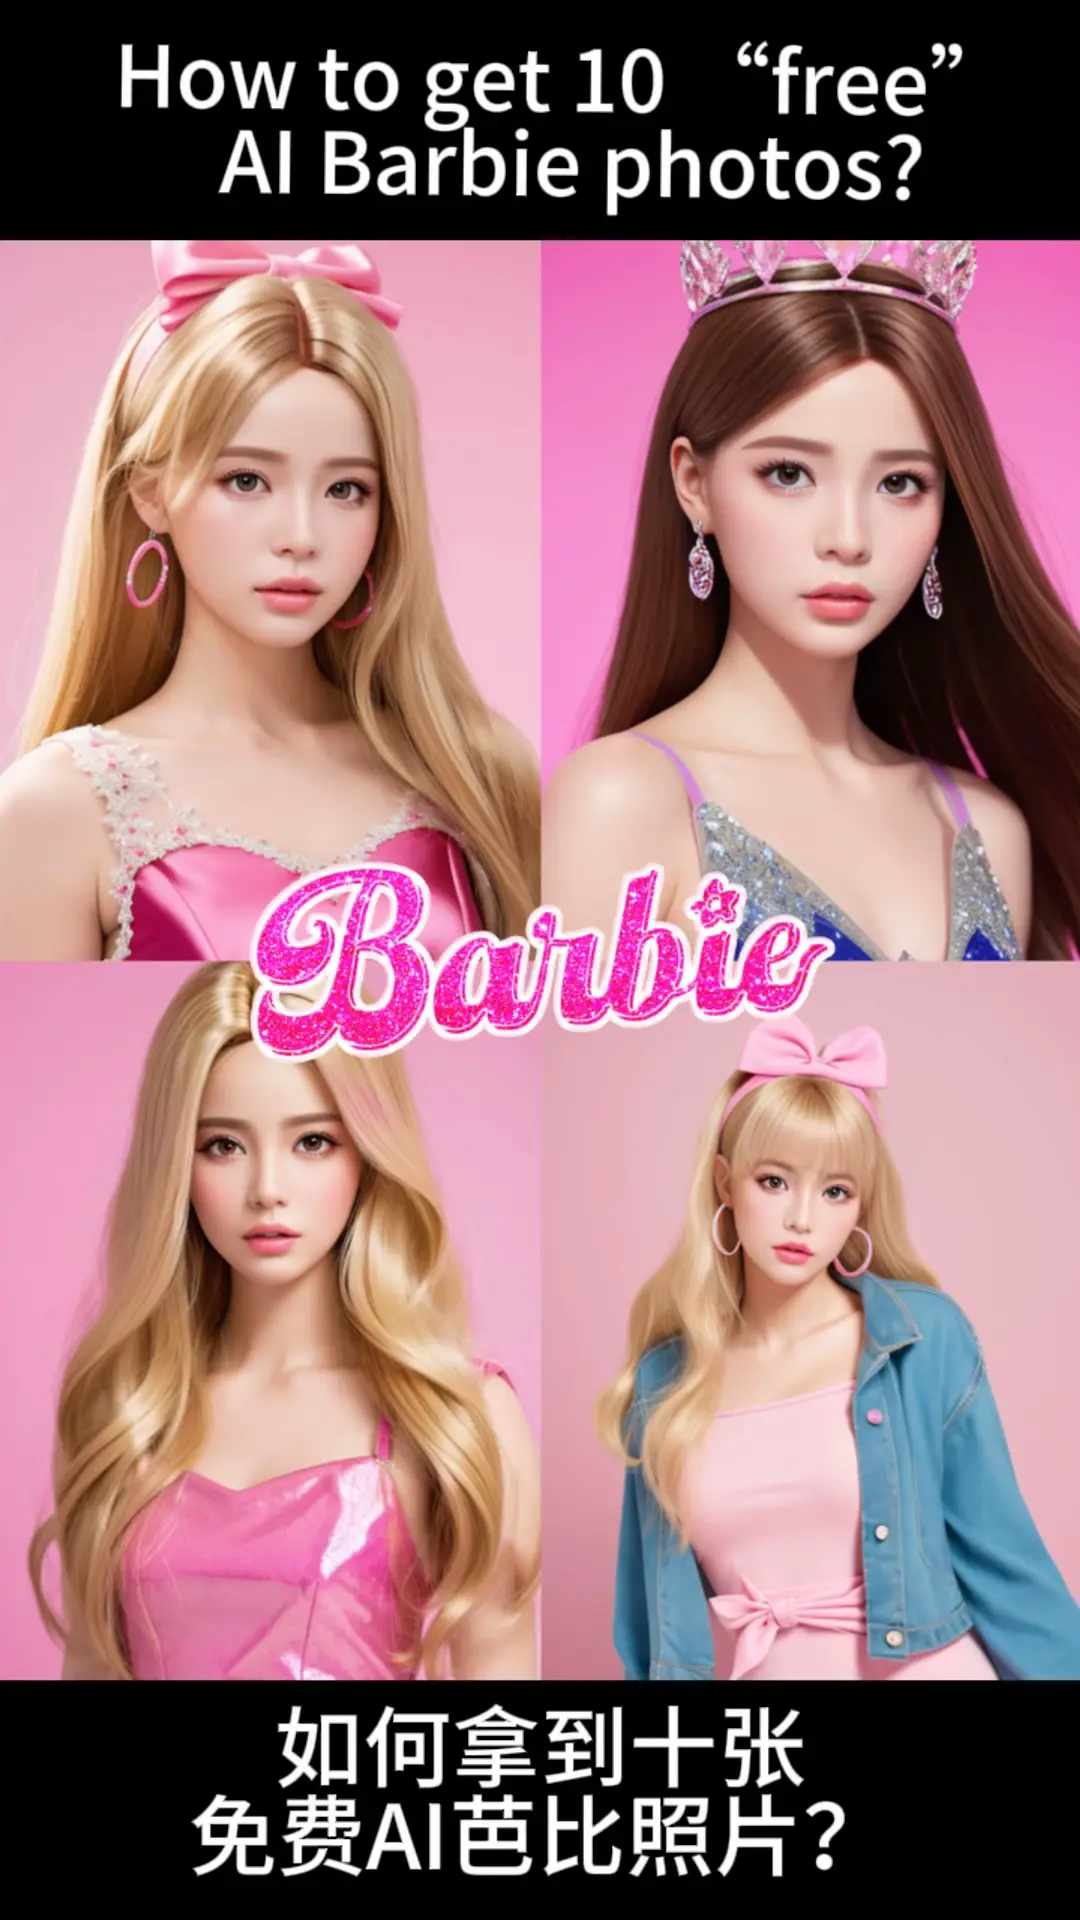 Barbie Fashion - Lemon8 Search